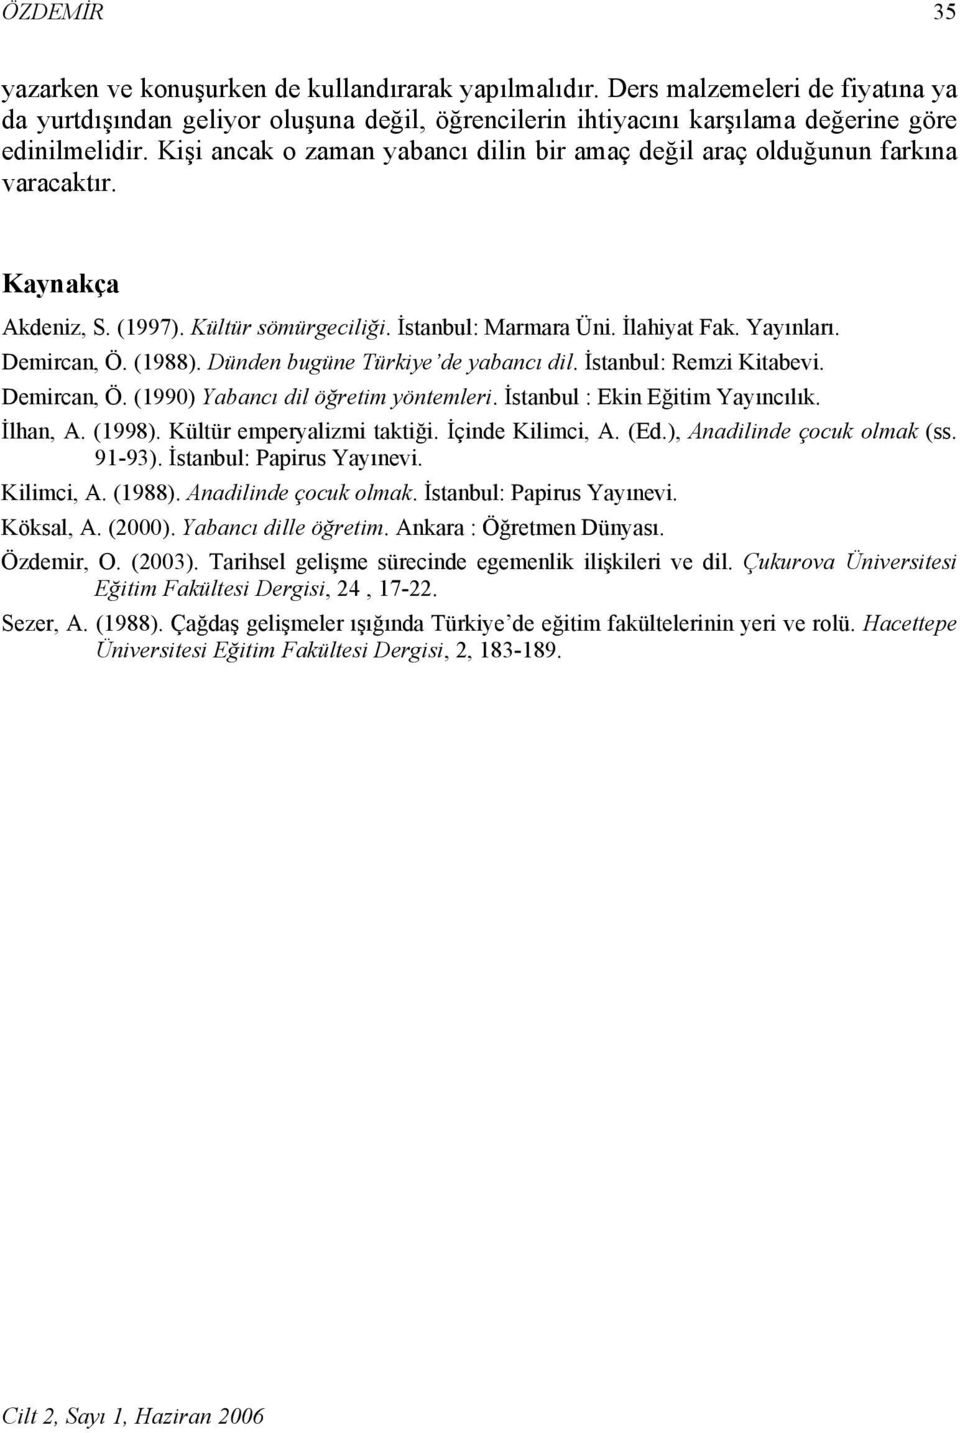 (1988). Dünden bugüne Türkiye de yabancı dil. İstanbul: Remzi Kitabevi. Demircan, Ö. (1990) Yabancı dil öğretim yöntemleri. İstanbul : Ekin Eğitim Yayıncılık. İlhan, A. (1998).